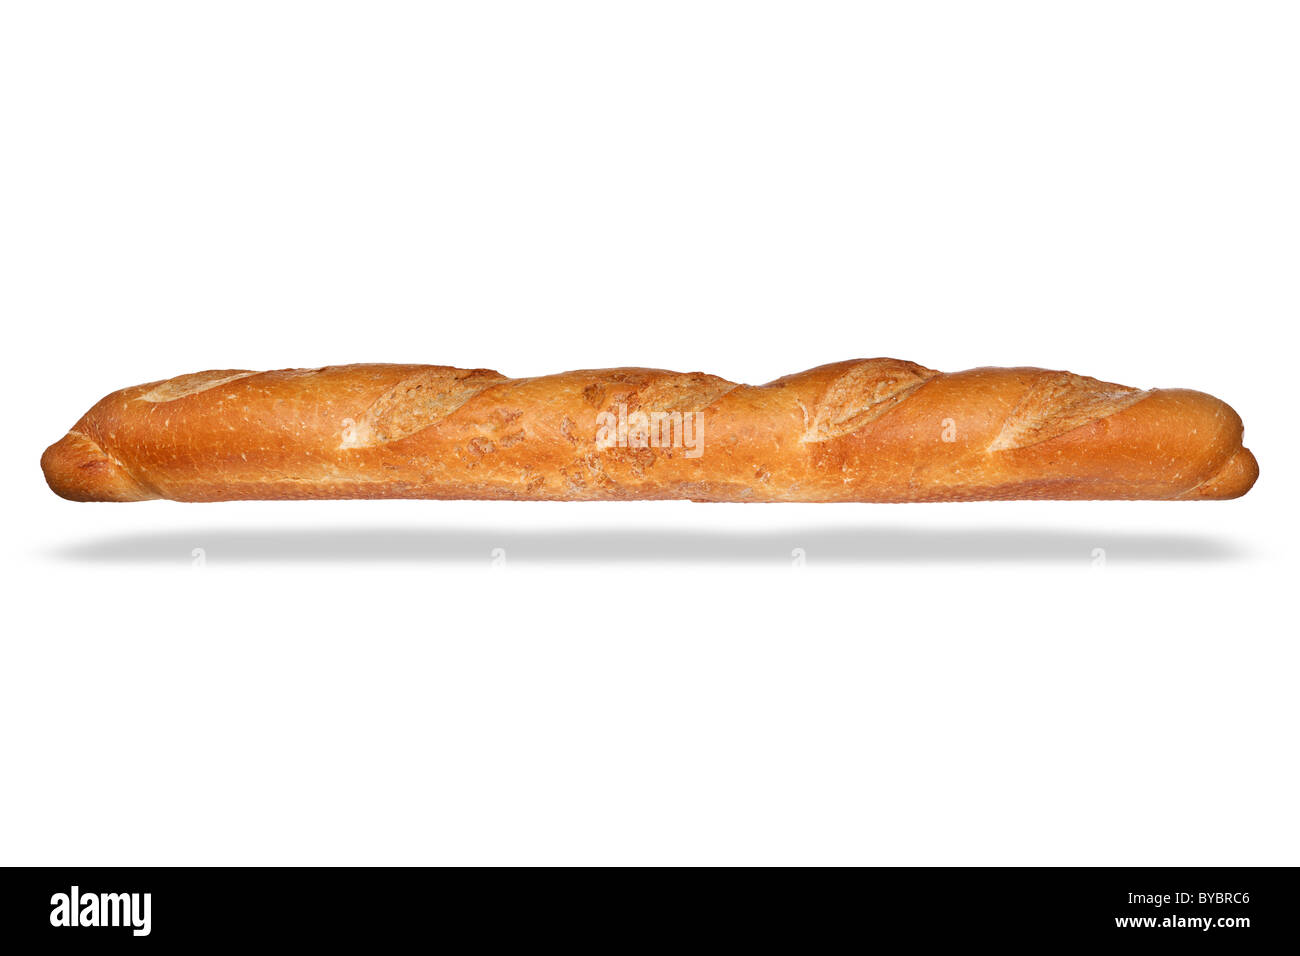 Foto de una hogaza de pan francés, aislado en un fondo blanco con sombra flotante. Foto de stock